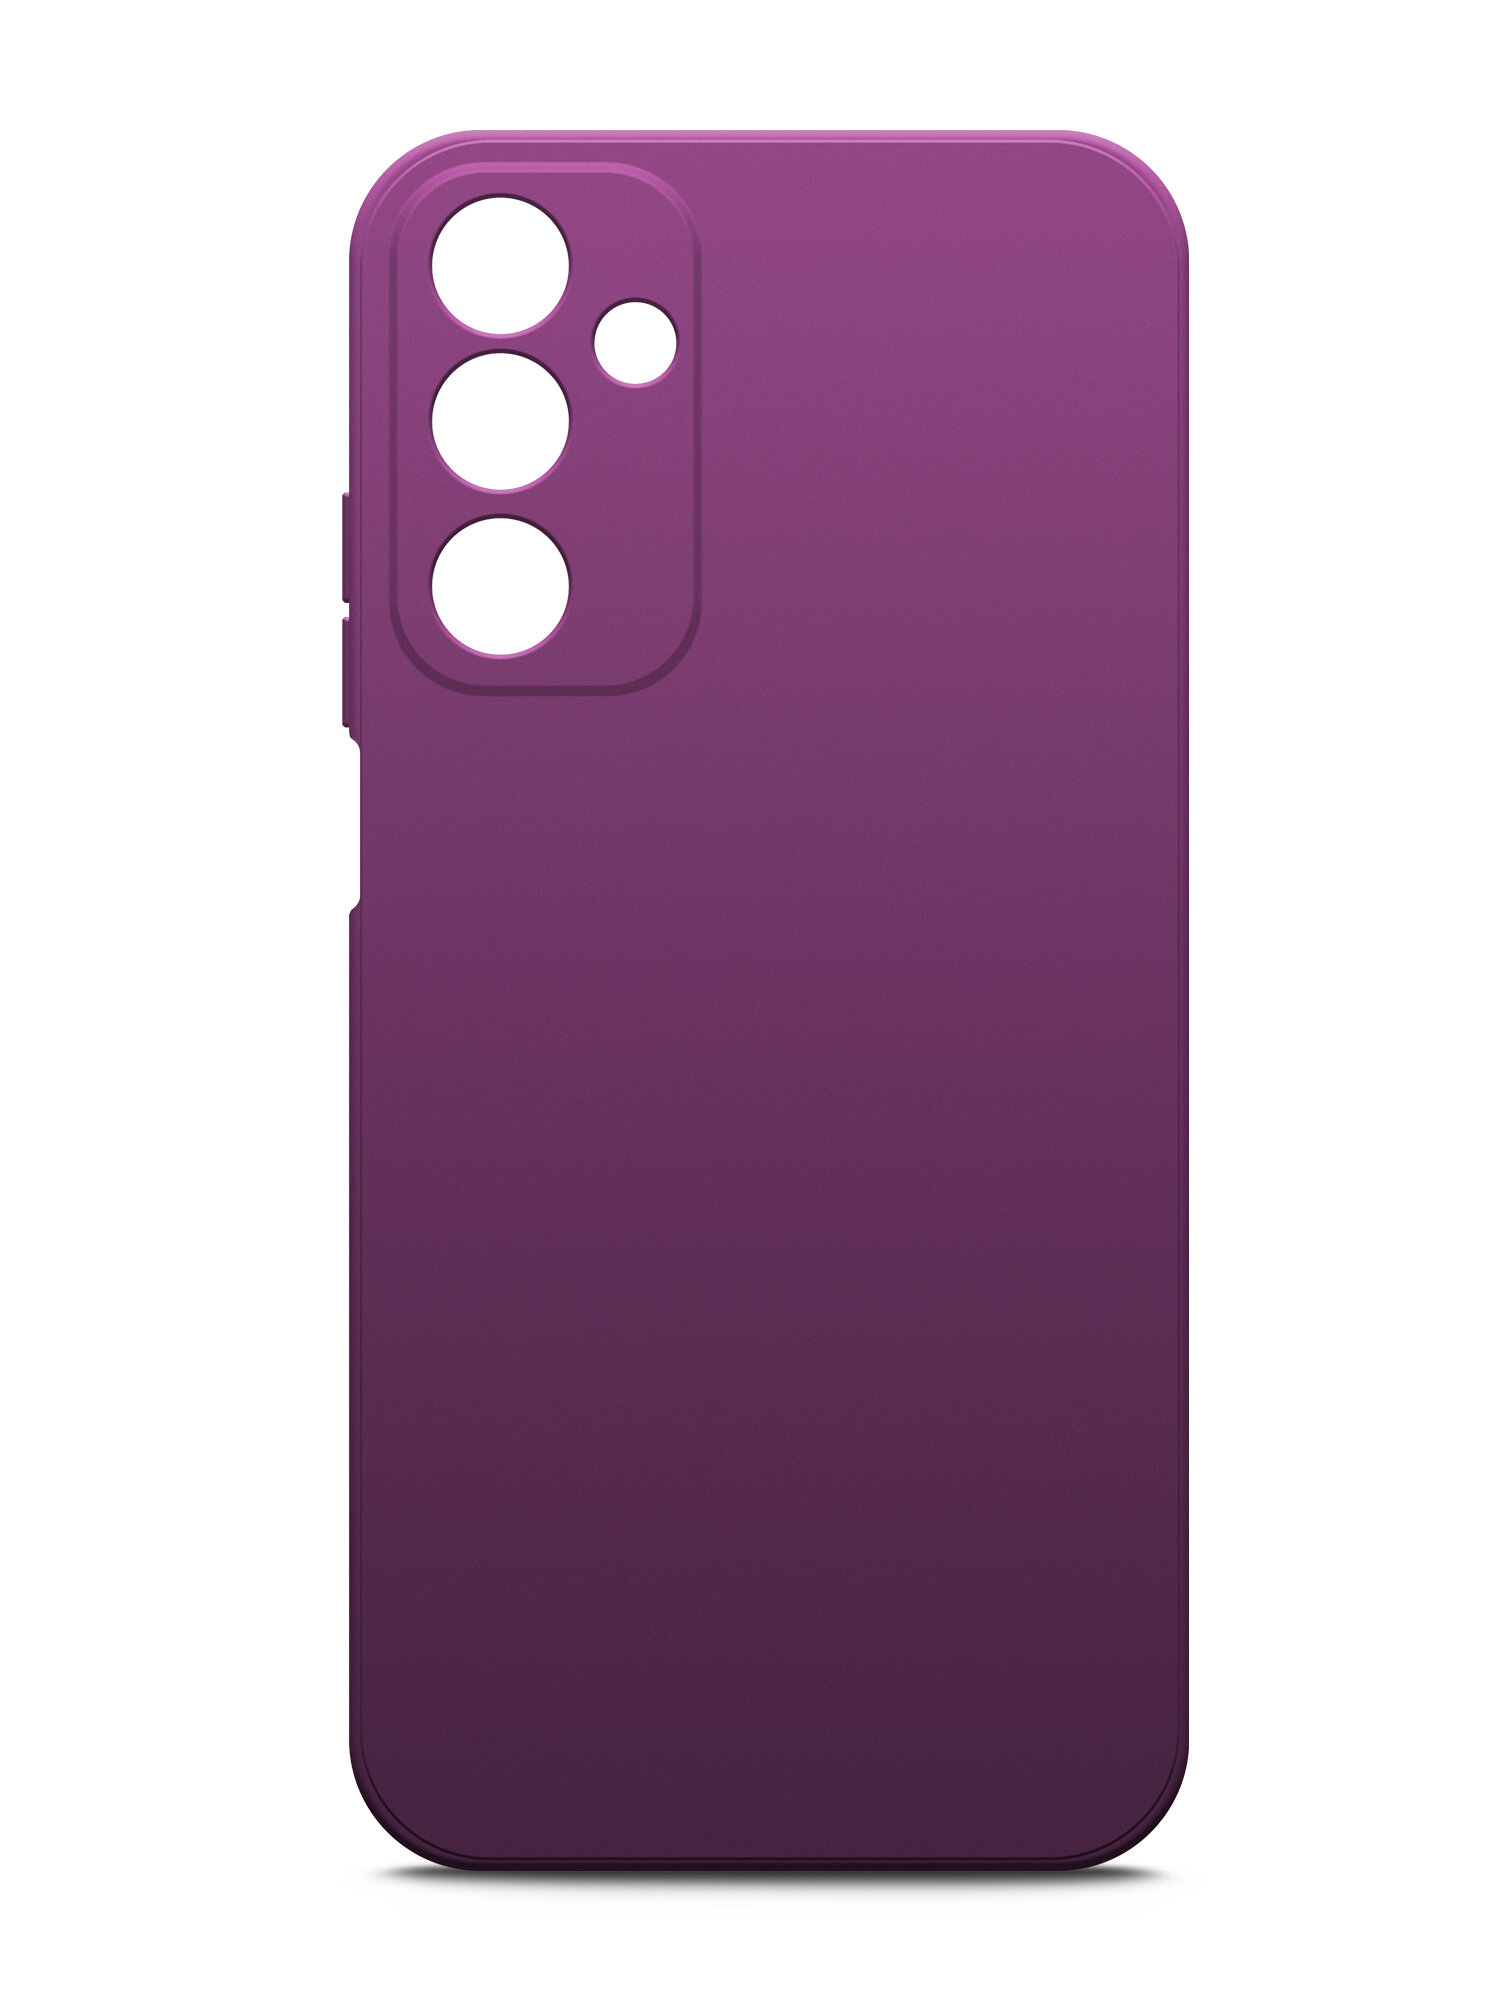 Чехол на Samsung Galaxy A05s (Самсунг Галакси А05с) фиолетовый силиконовый с защитной подкладкой из микрофибры Microfiber Case, Brozo